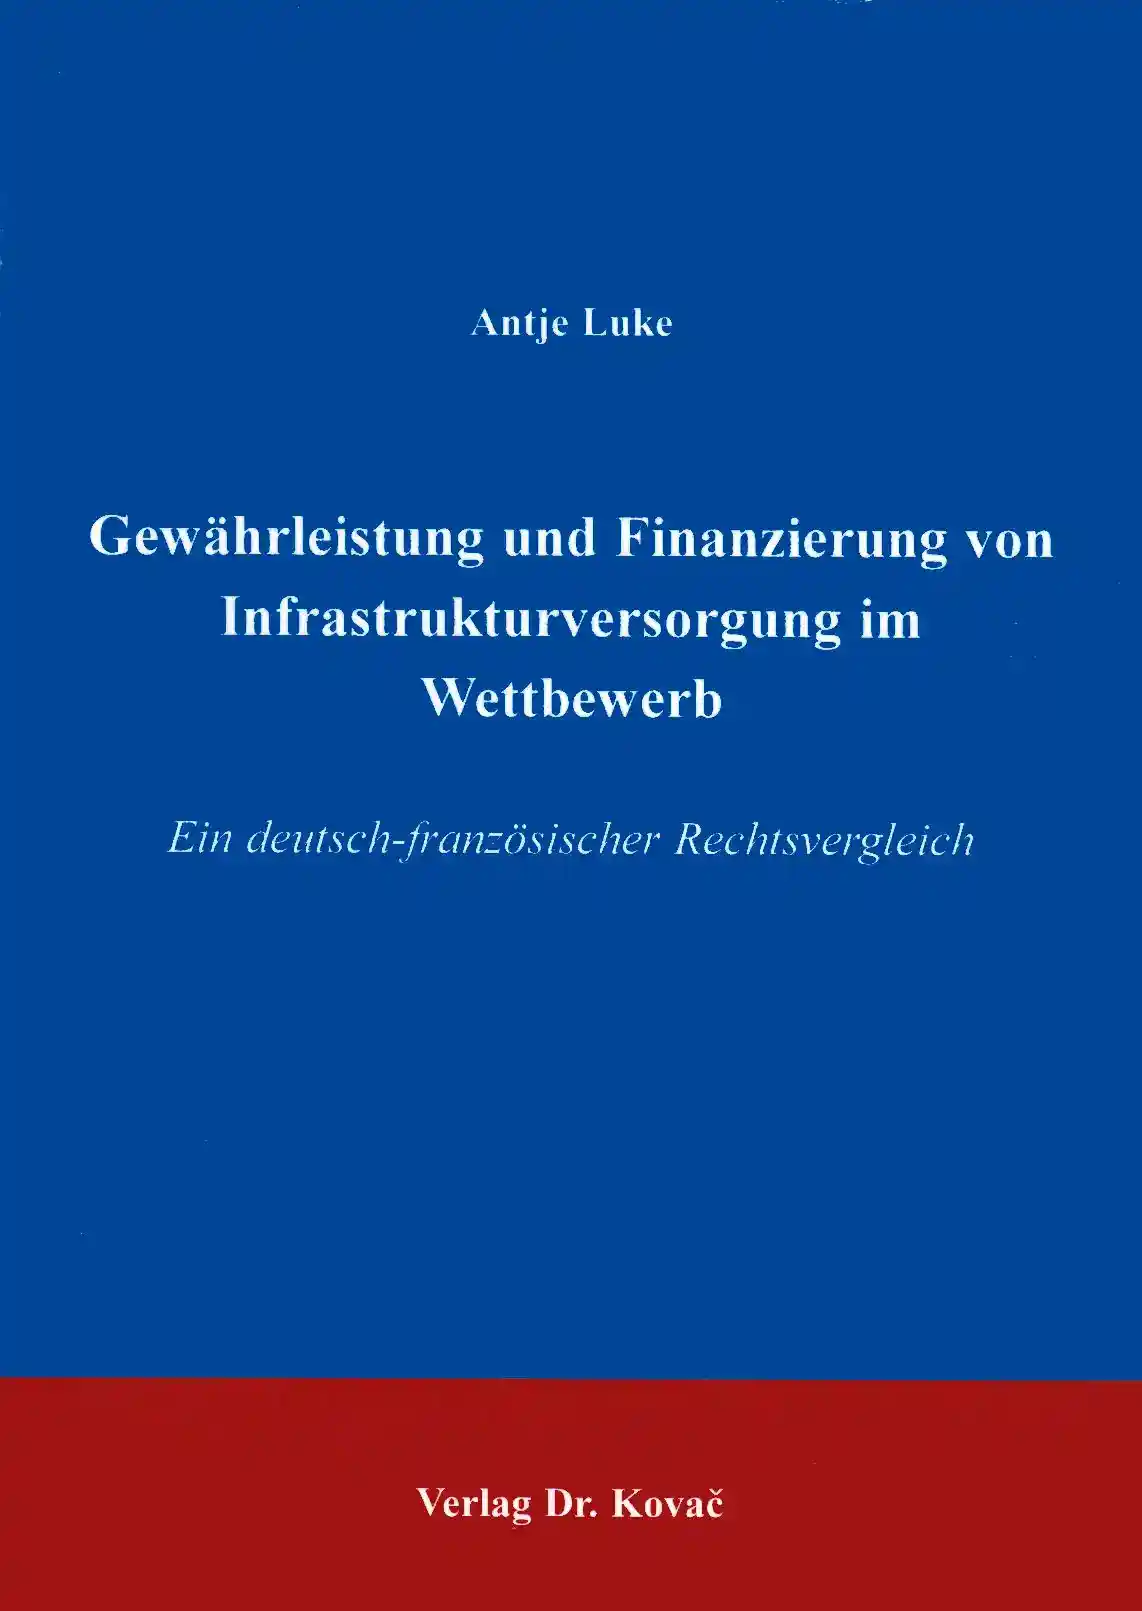  Doktorarbeit: Gewährleistung und Finanzierung von Infrastrukturversorgung im Wettbewerb